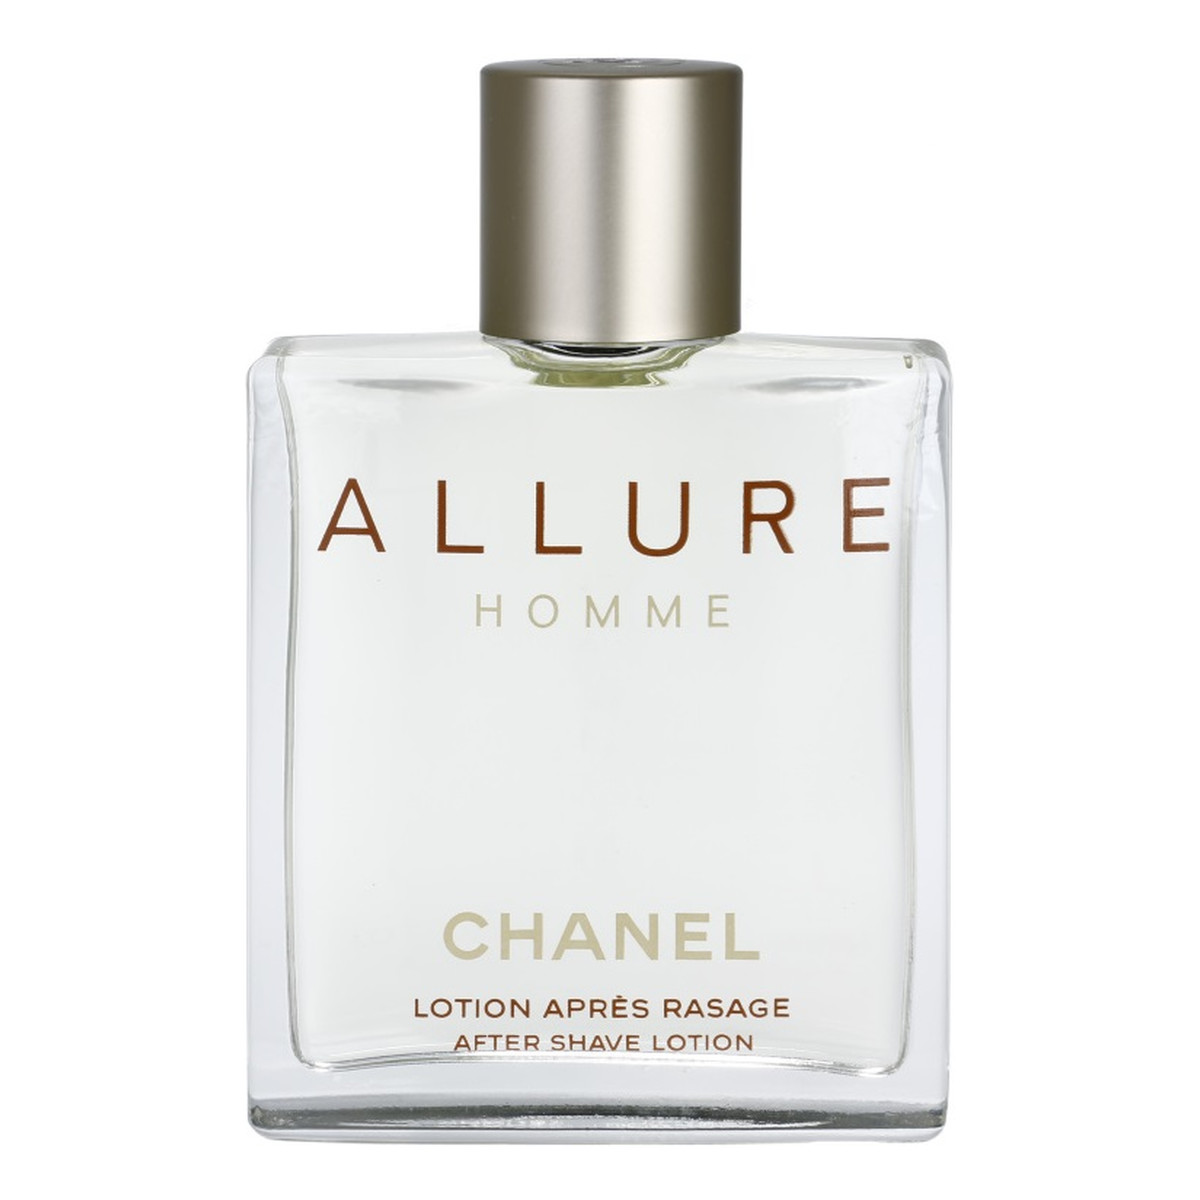 Chanel Allure Homme woda po goleniu dla mężczyzn flakon 100ml